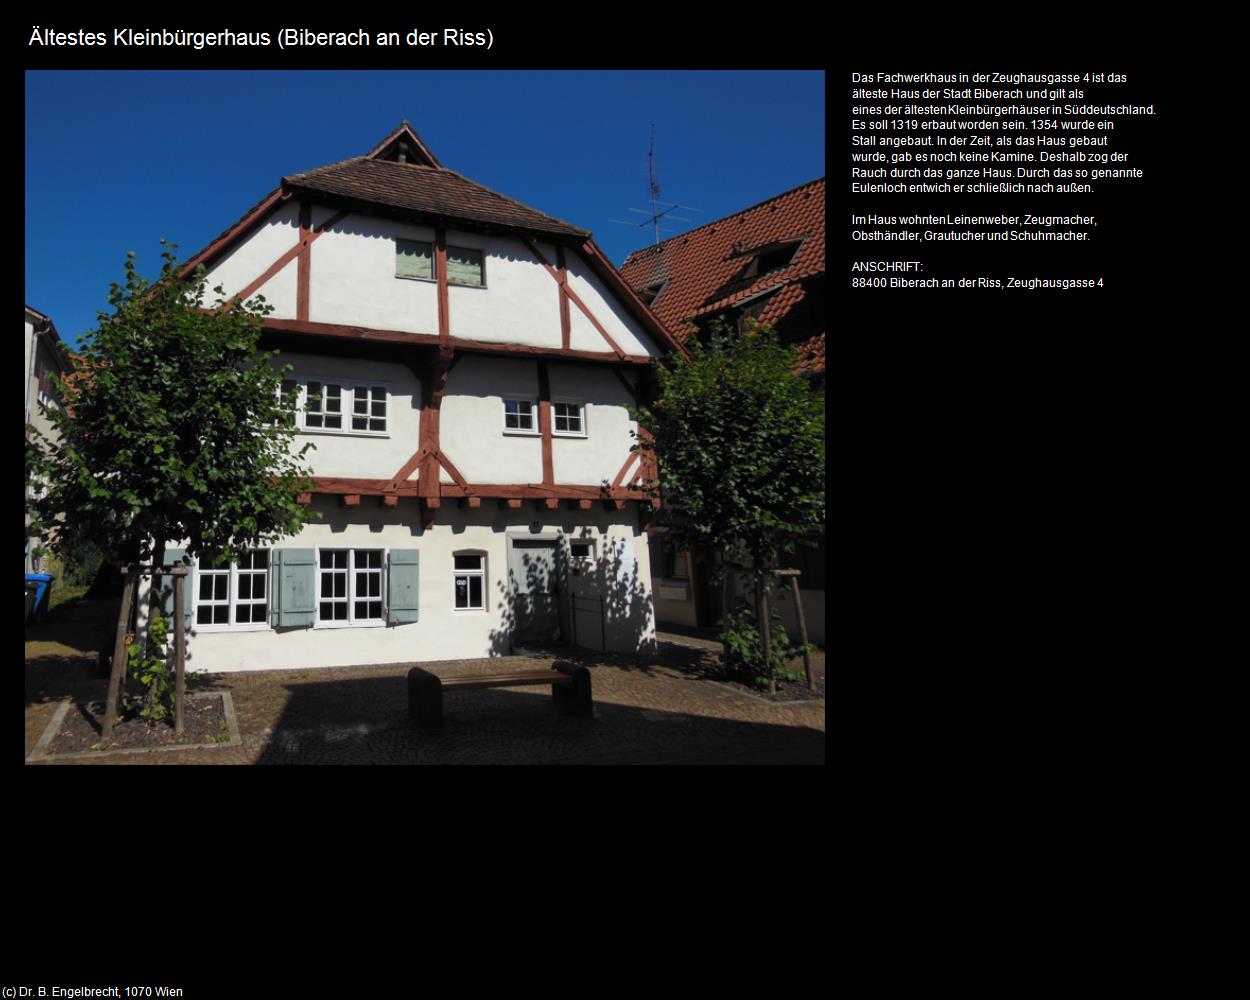 Ältestes Bürgerhaus (Biberach an der Riss) in Kulturatlas-BADEN-WÜRTTEMBERG